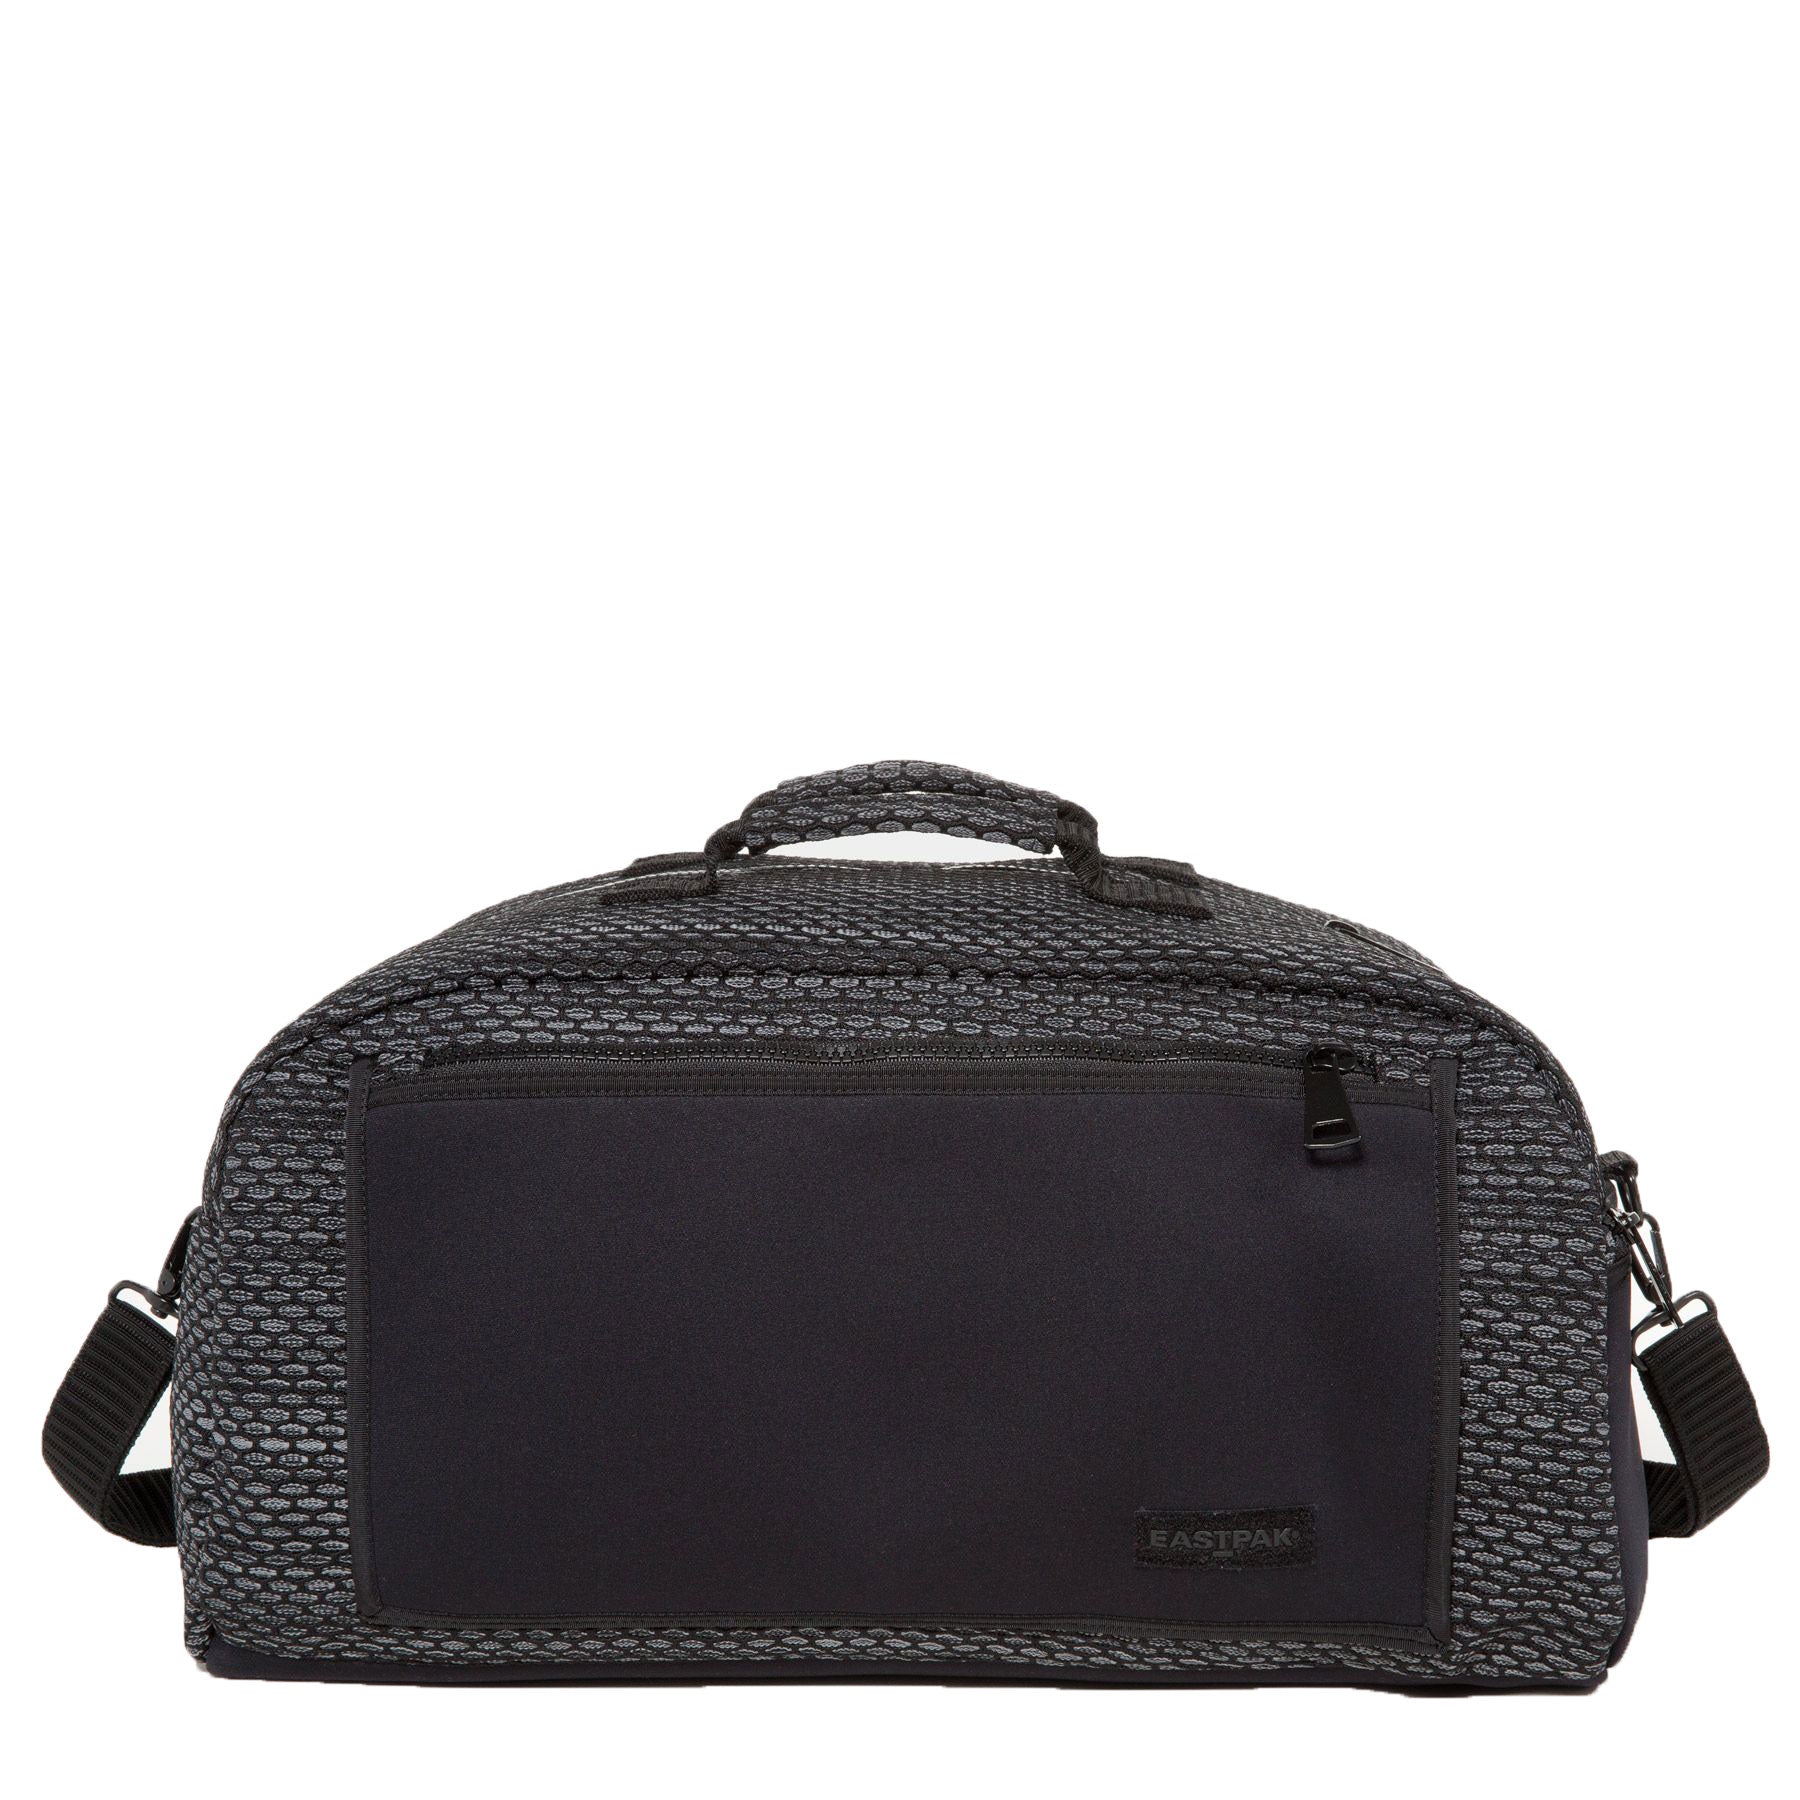 EASTPAK Dark Twine Stand Duffel Bag #EK735 32L NWT – Walk Into Fashion